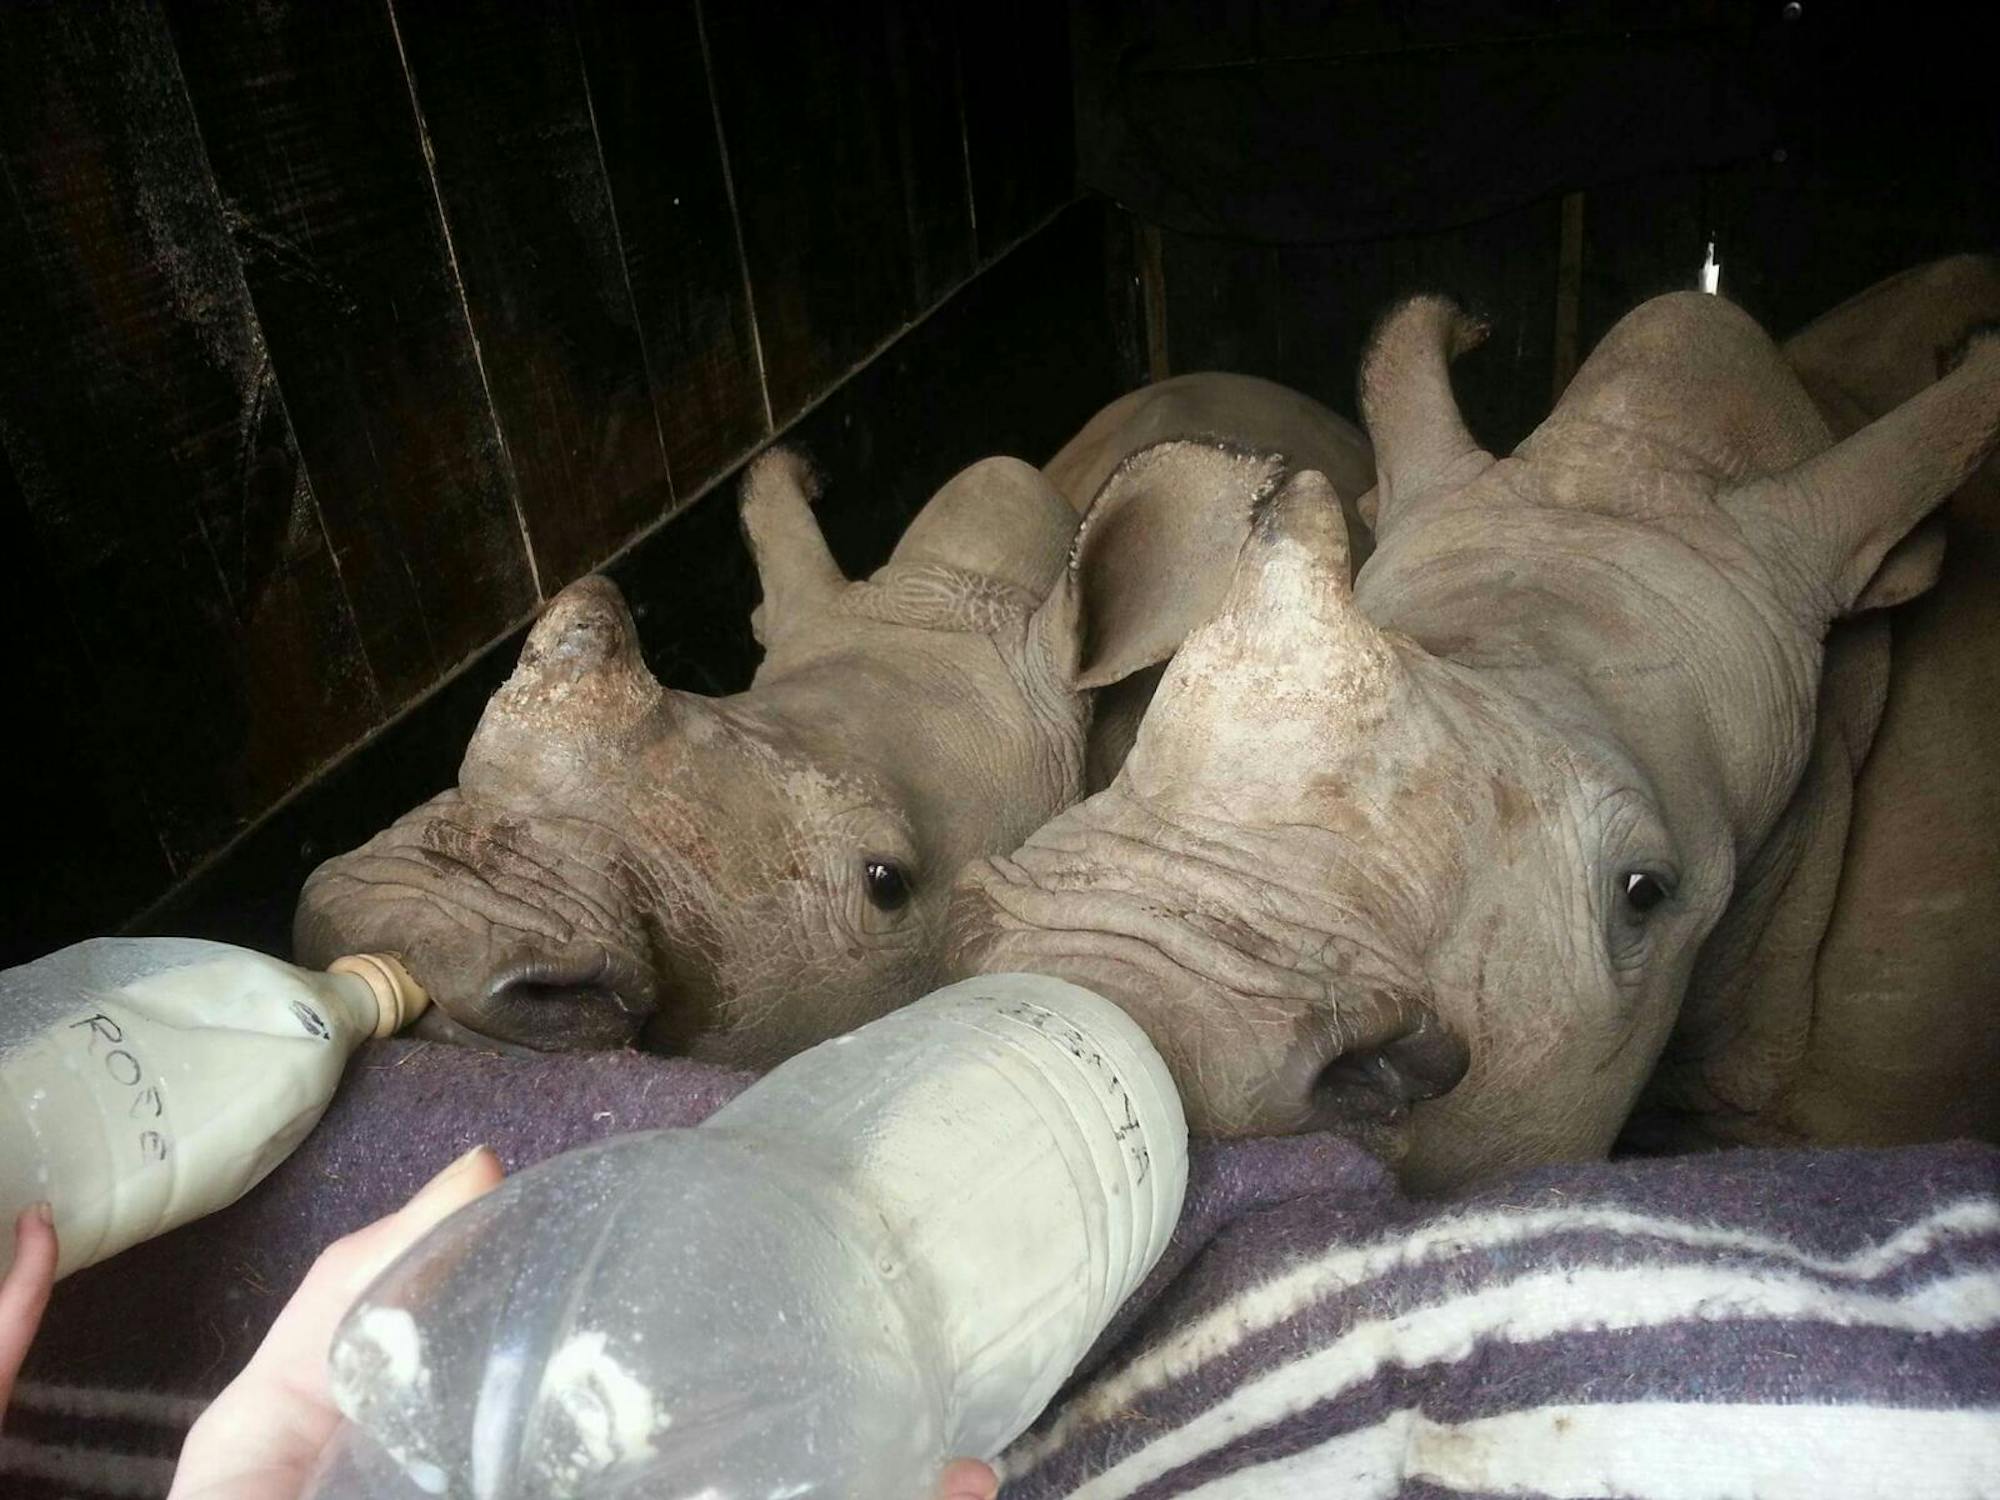 Rhino feeding